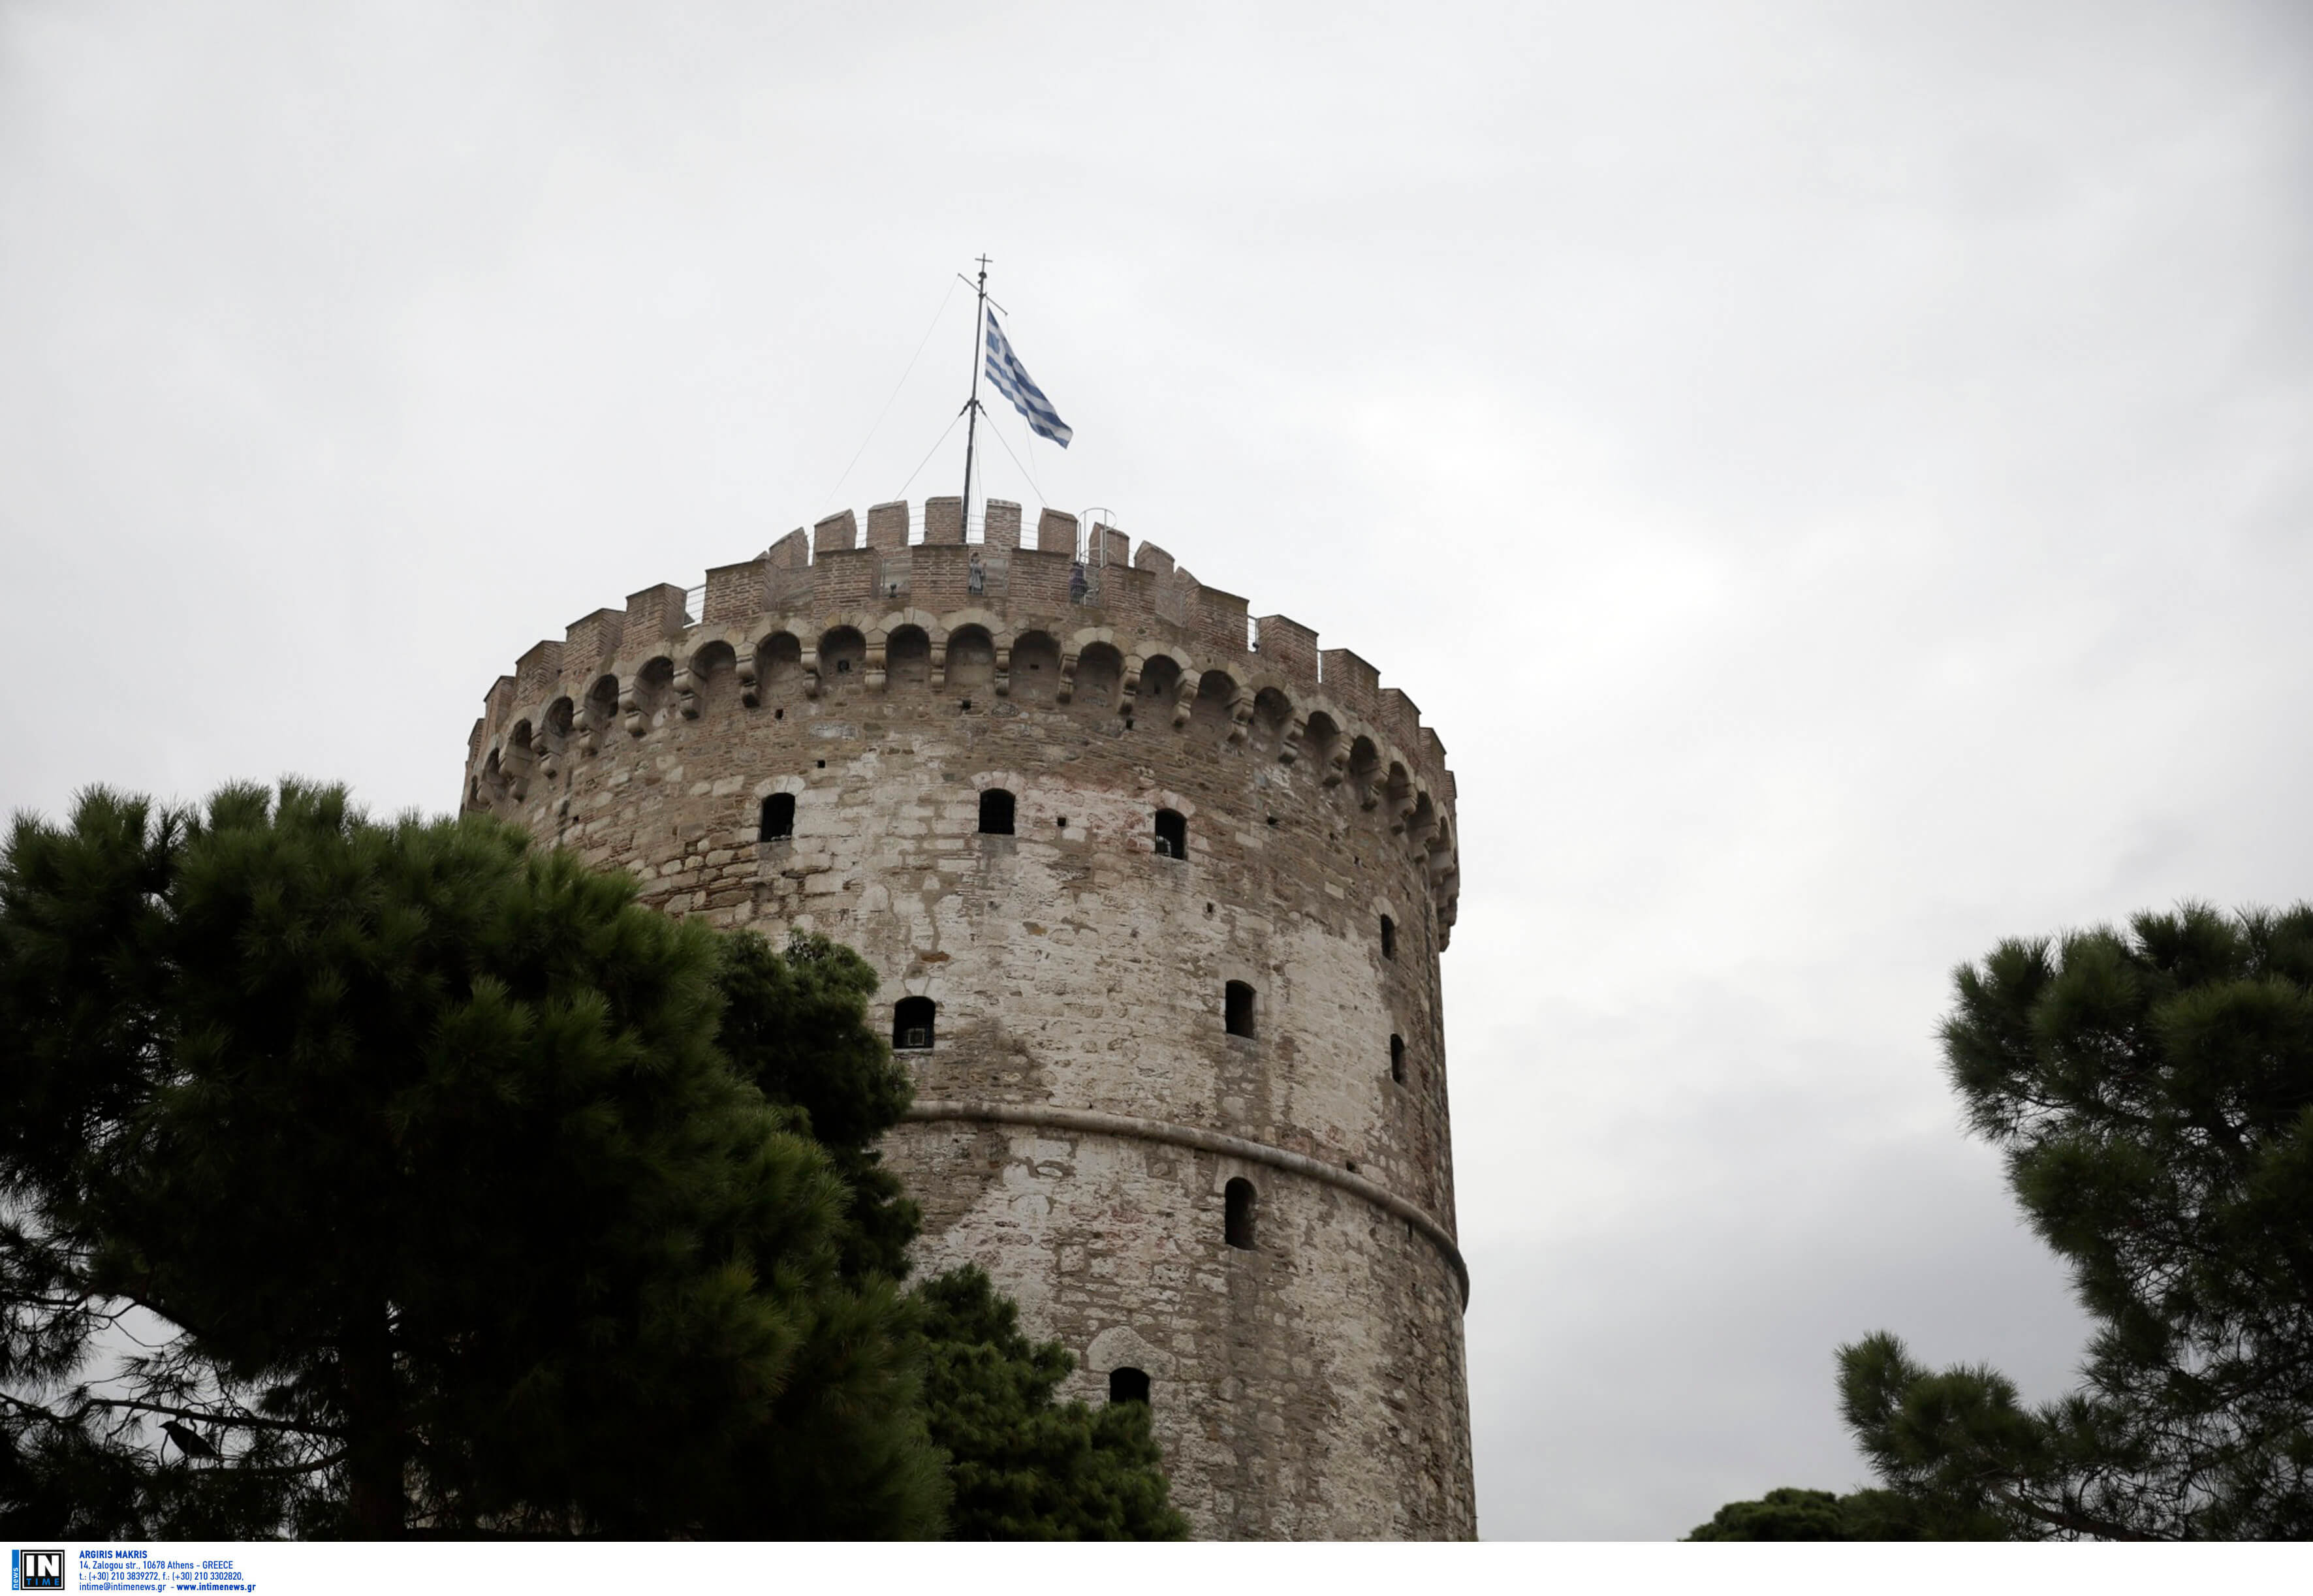 Θεσσαλονίκη: Όταν η πόλη ήταν μέρος του «Grand Tour» εύπορων Ευρωπαίων πριν από έναν αιώνα